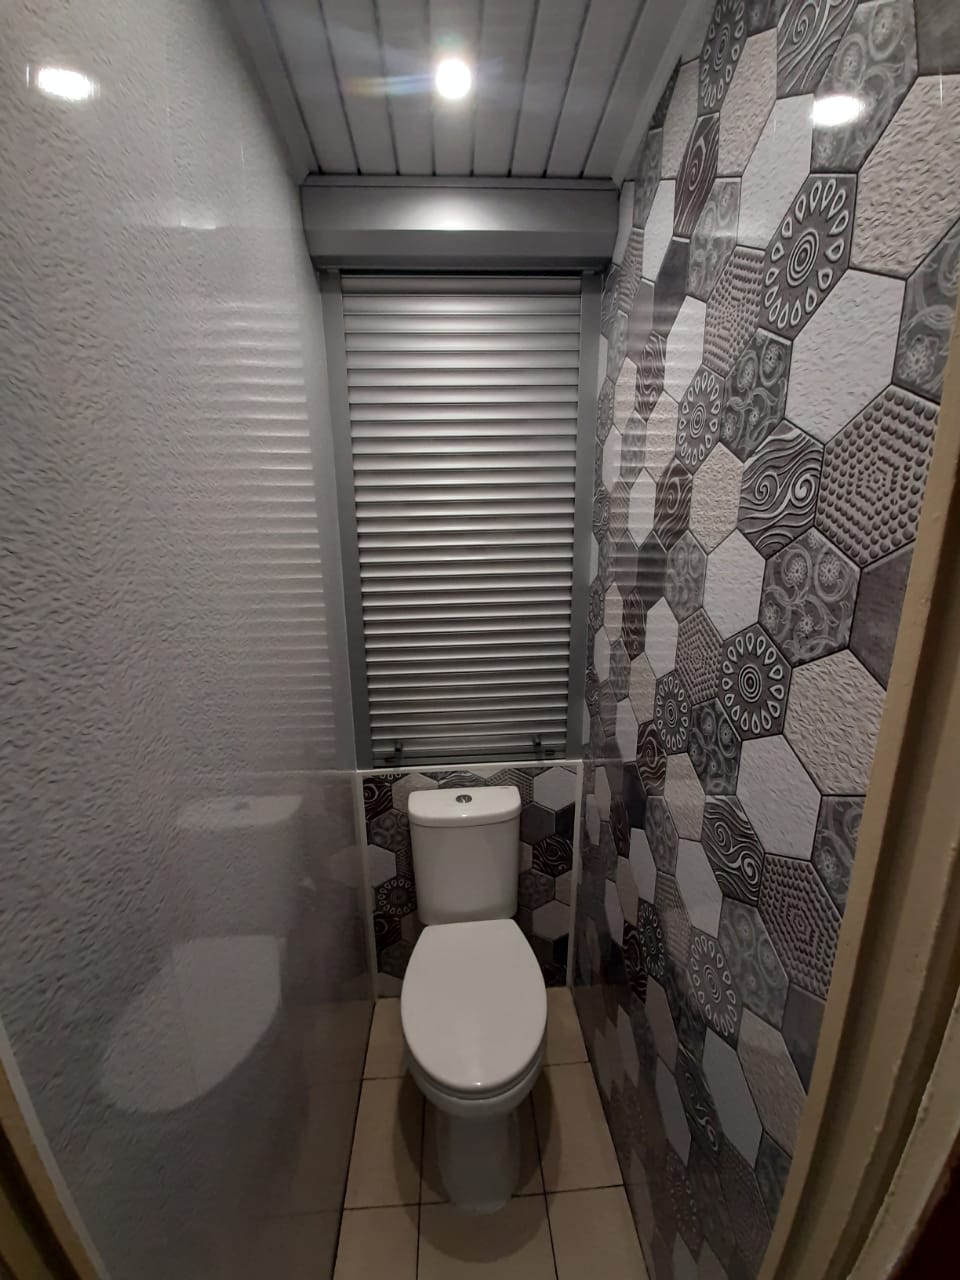 Ремонт в туалете панелями в серых тонах